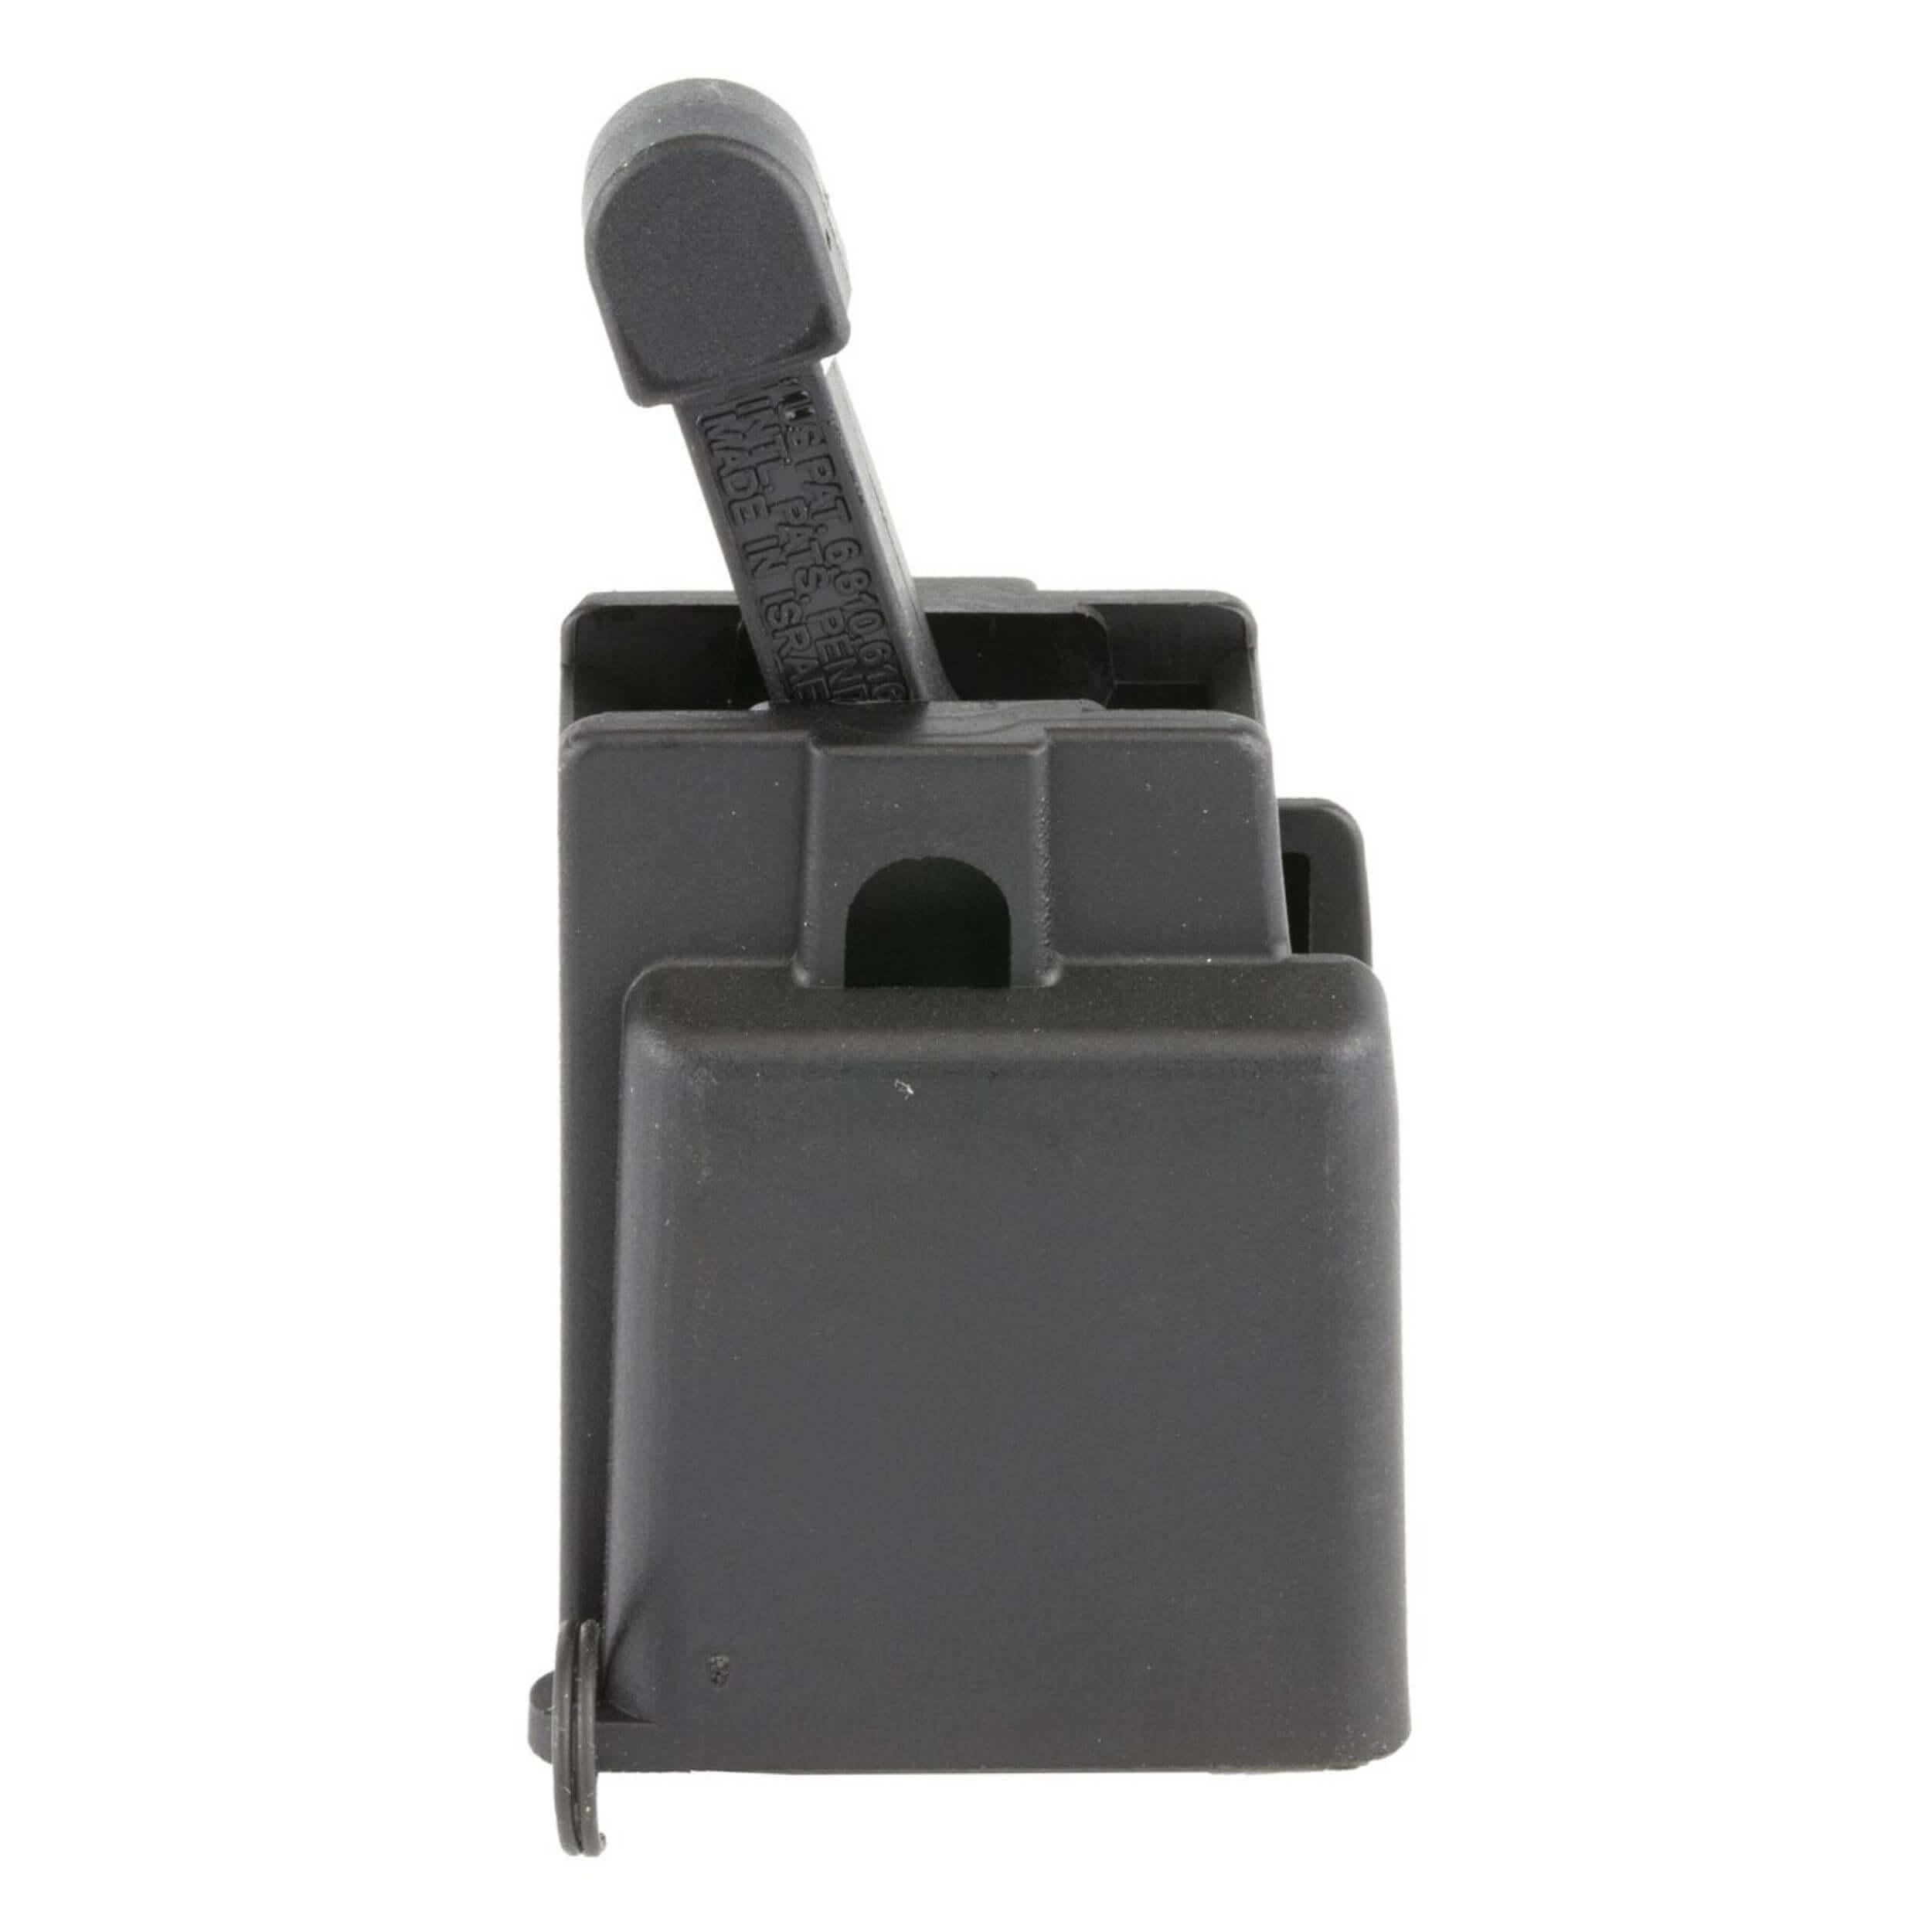 maglula® MP5 9mm LULA™ loader & unloader – Black LU14B